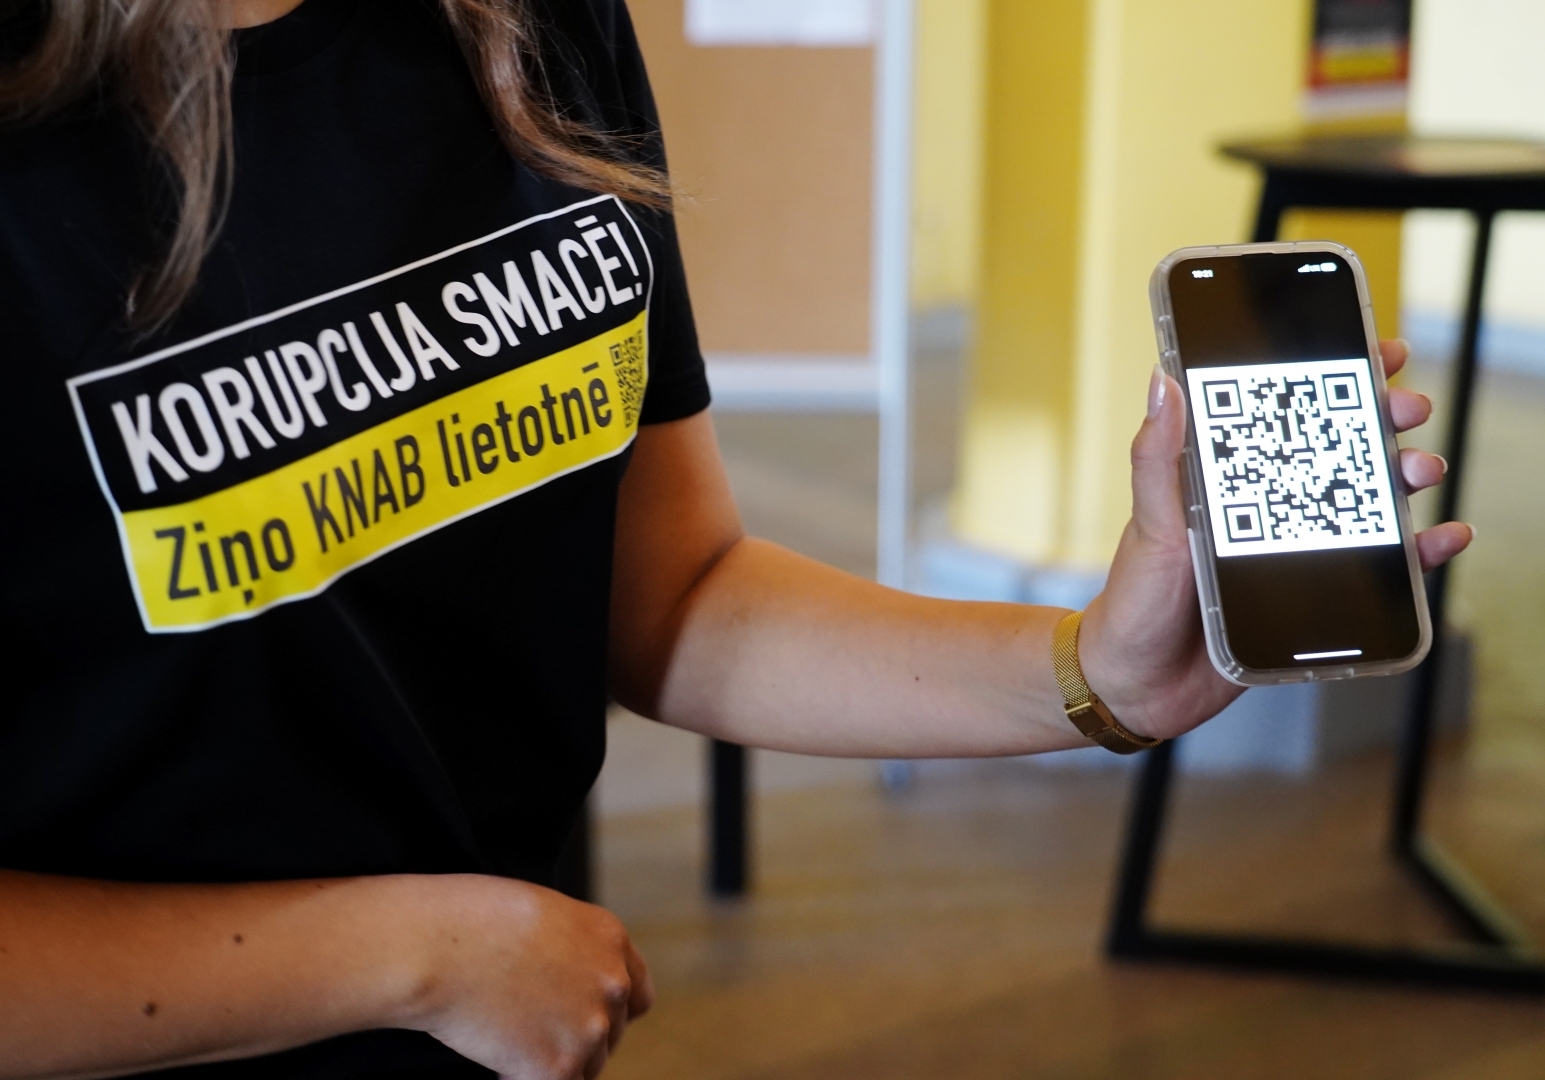 Sieviete ar t-kreklu ar KNAB kampaņas saukli "Korupcija SMACĒ! Ziņo KNAB lietotnē" un telefons ar QR kodu